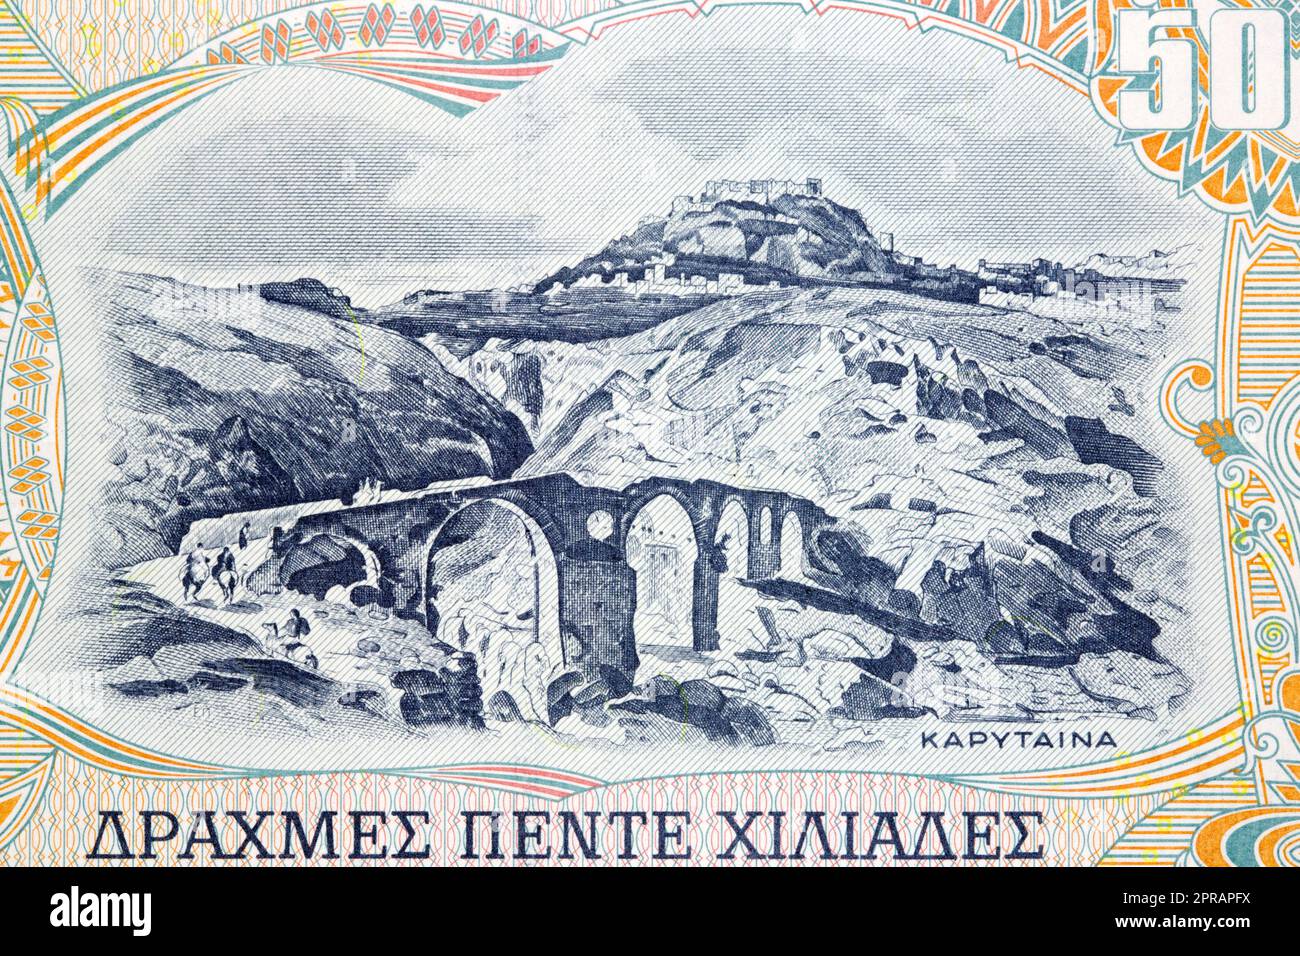 Vista panoramica della città di Karytaina dai vecchi soldi greci Foto Stock